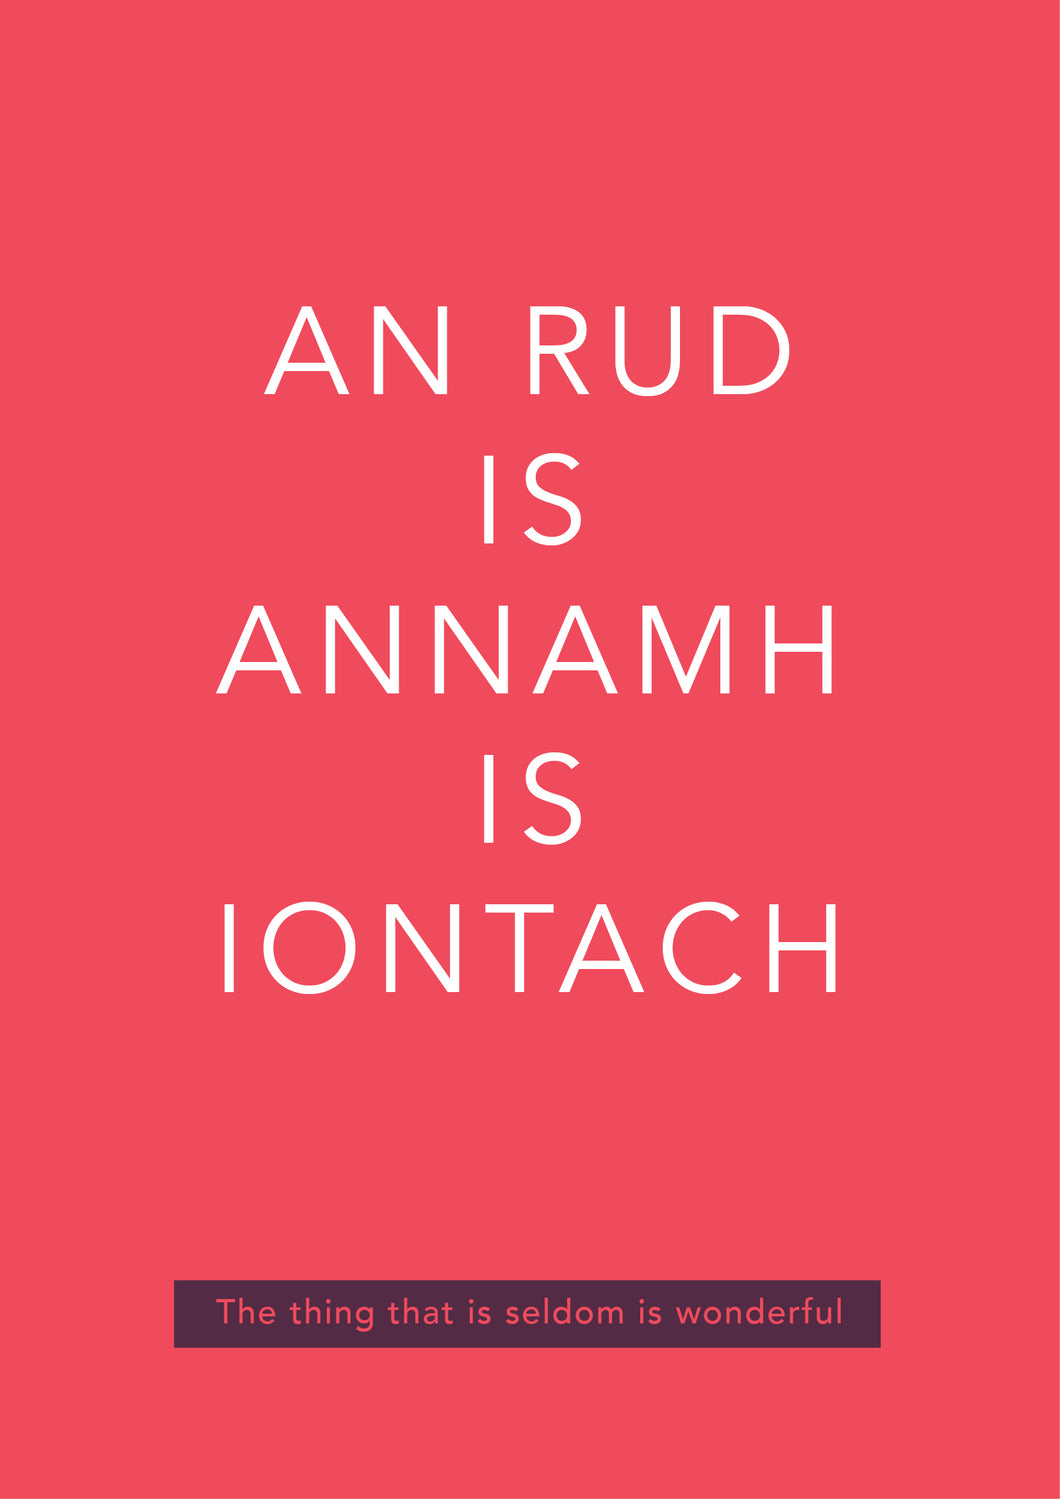 An rud is annamh is iontach